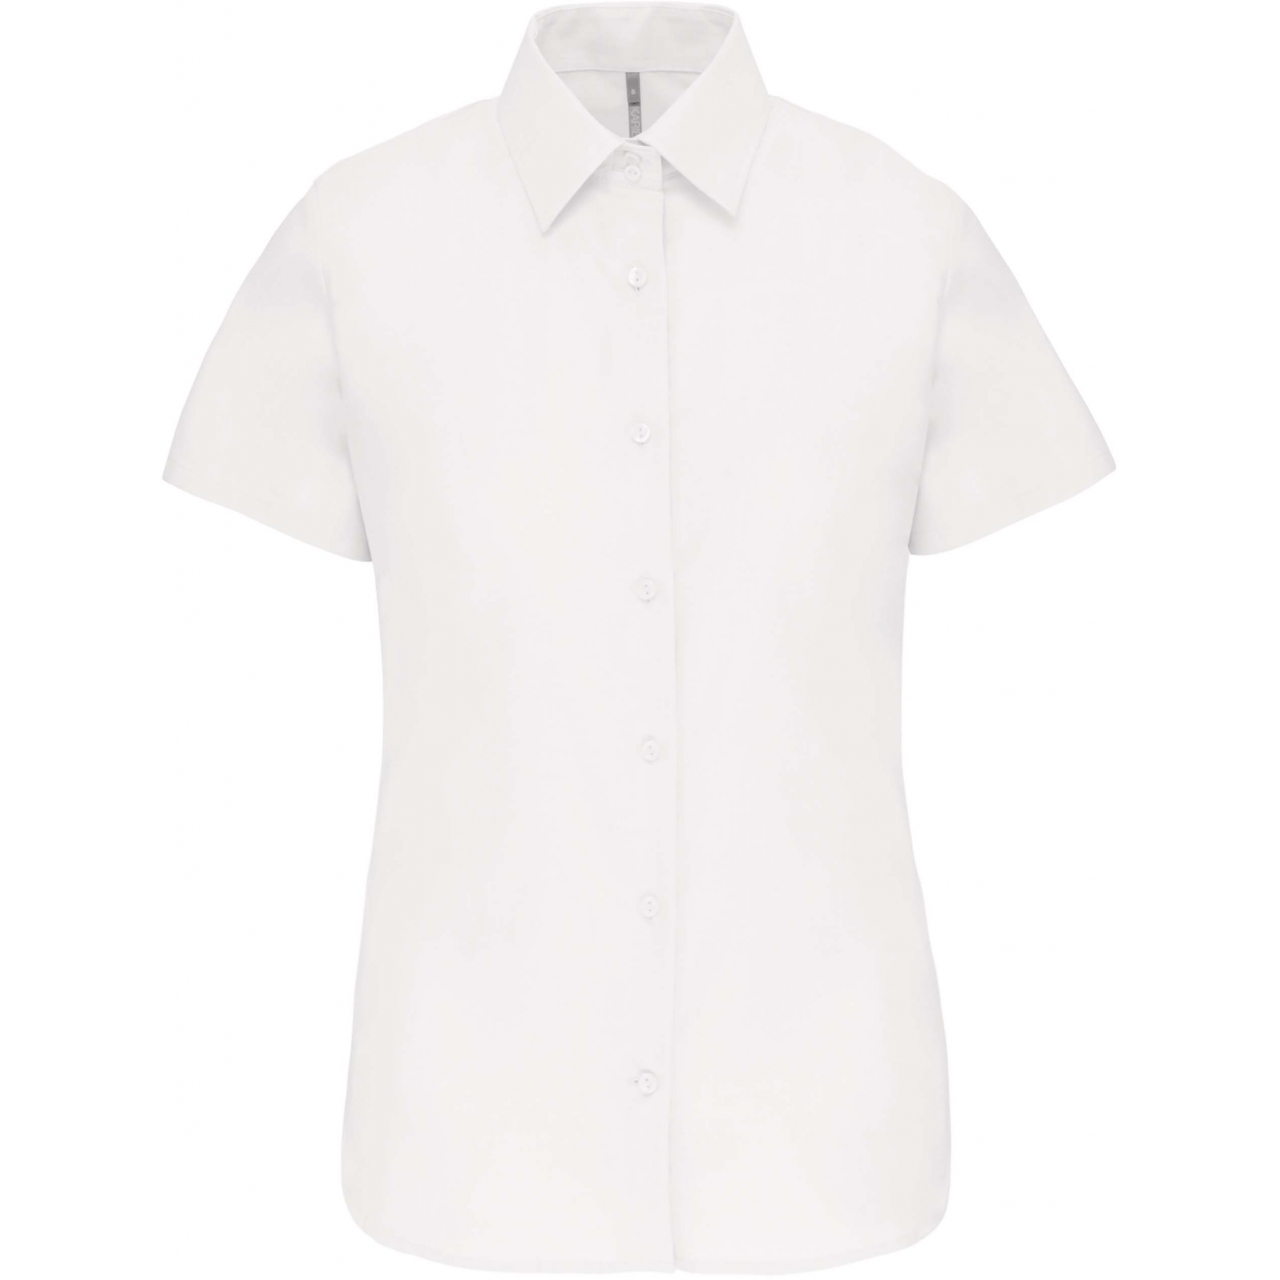 Košile dámská s krátkým rukávem Kariban Oxford - bílá, XS